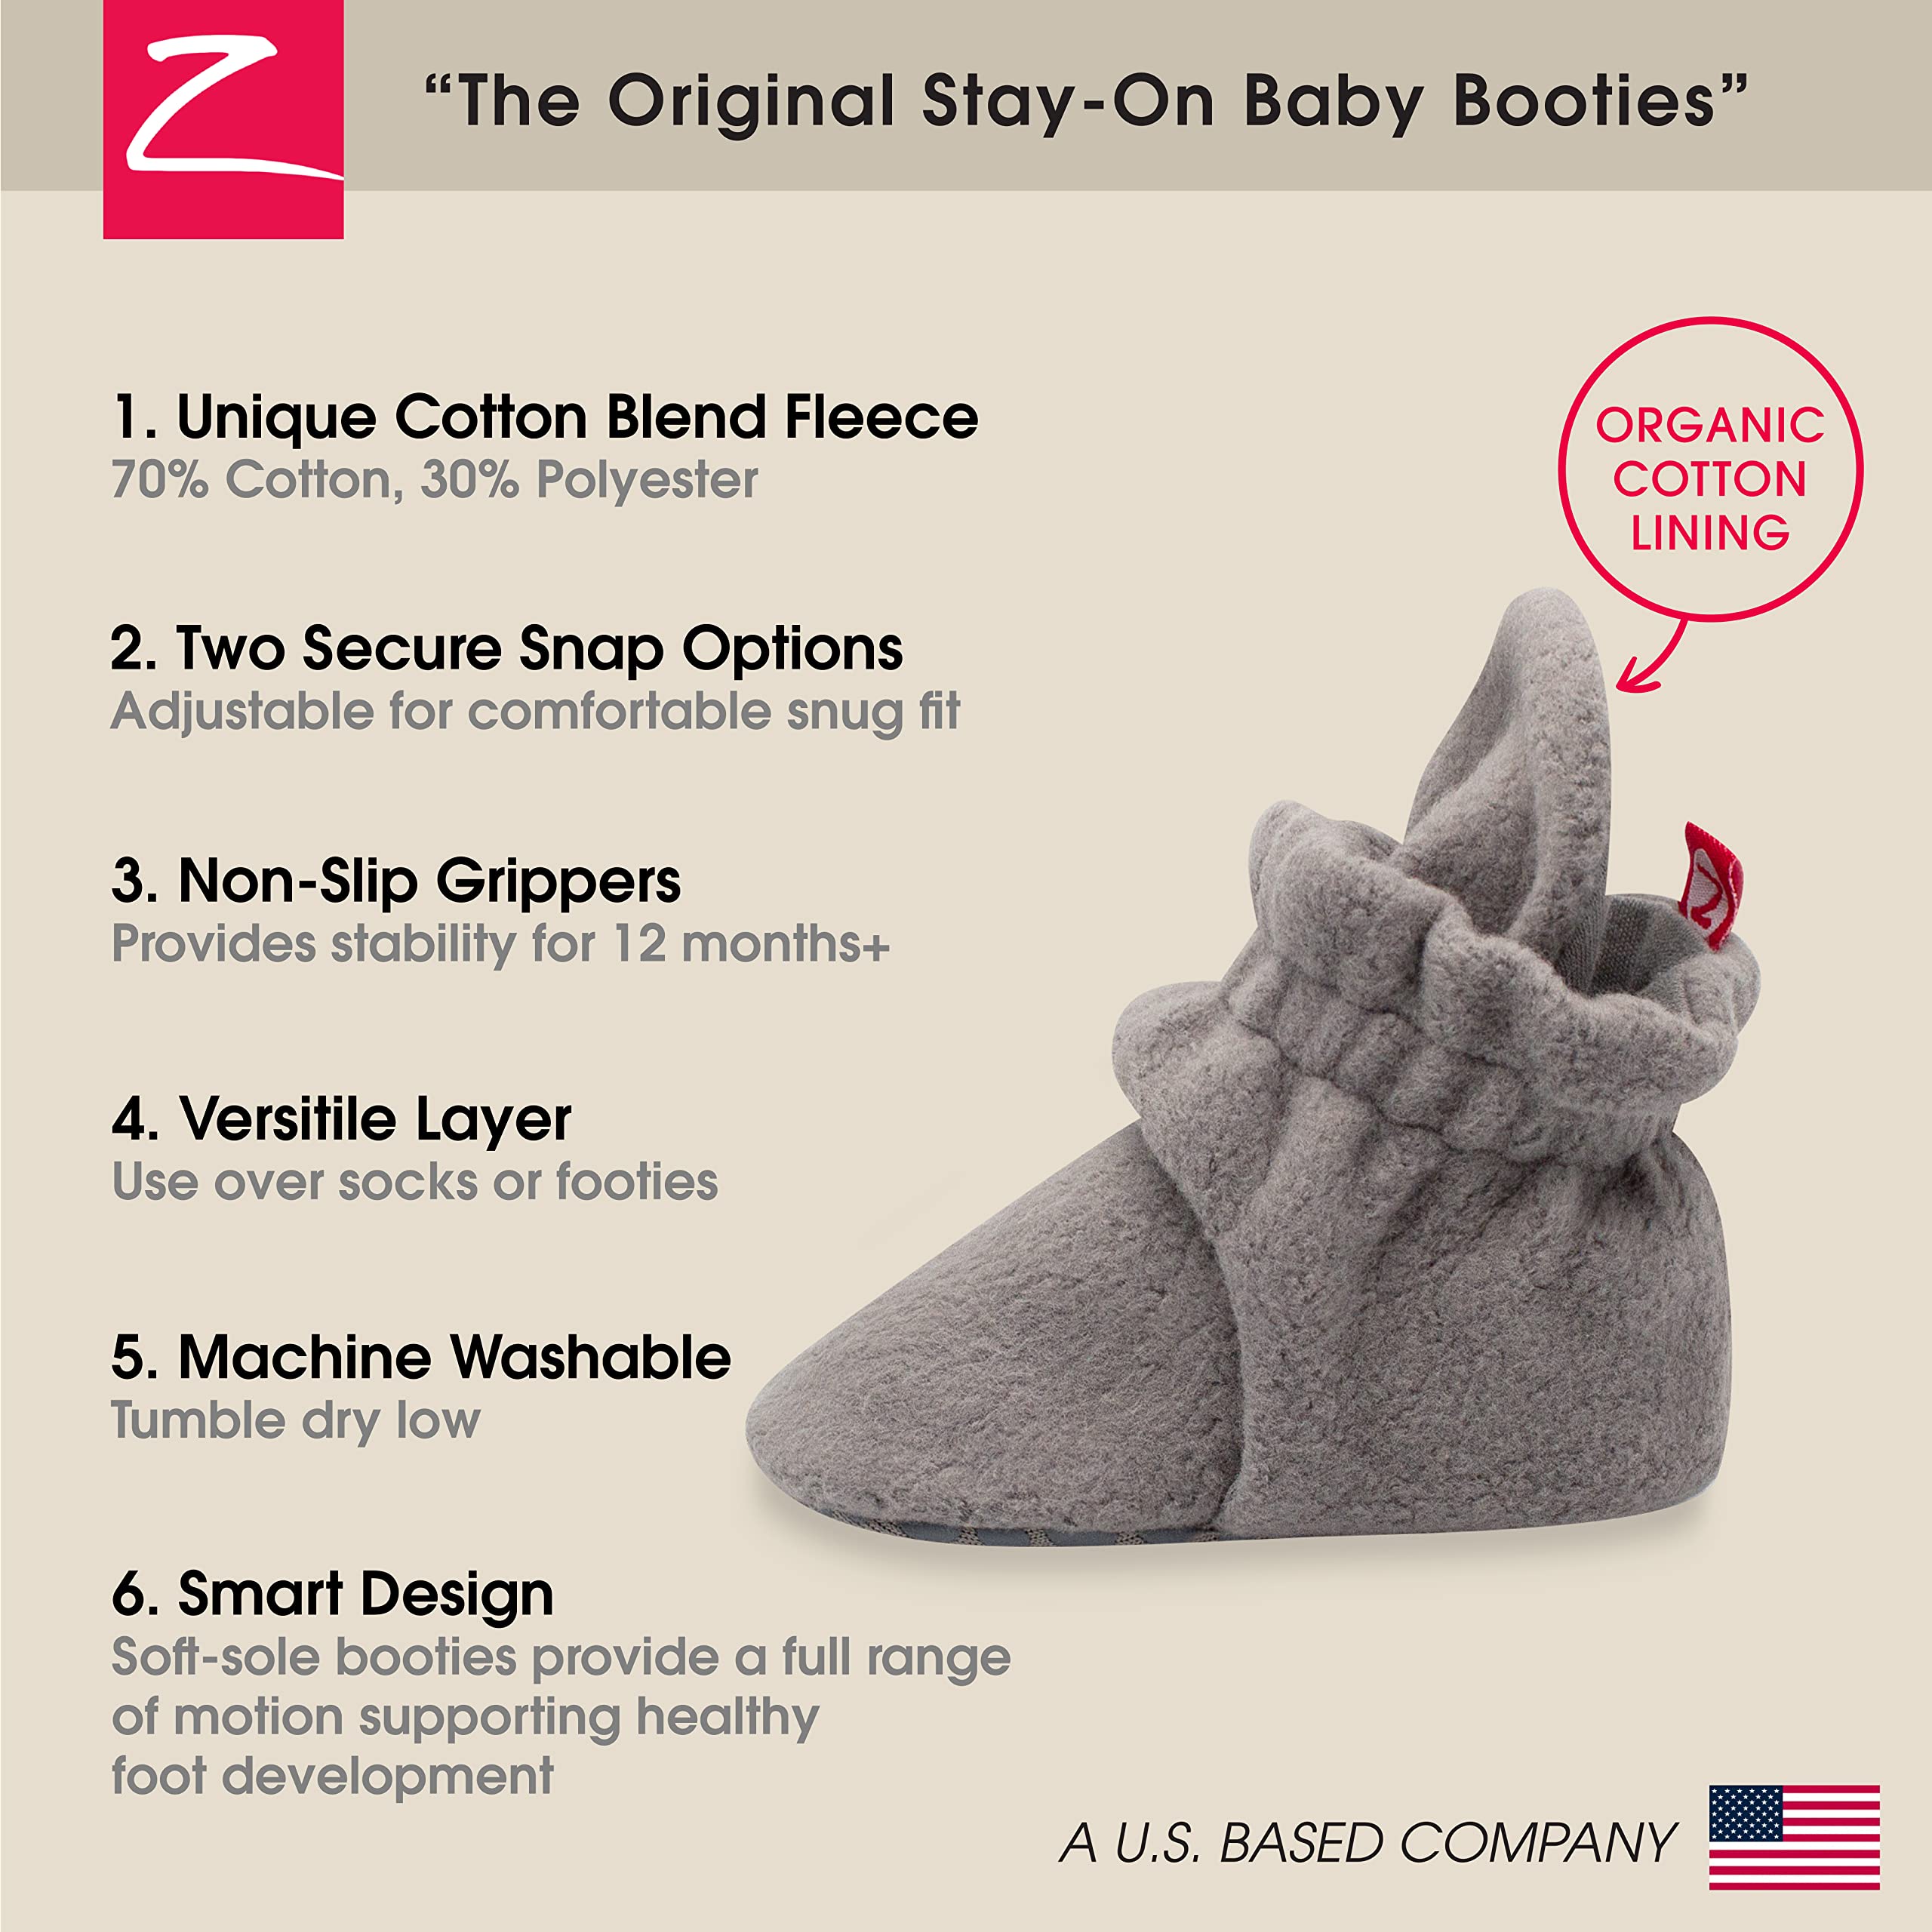 Zutano Unisex Cozie Fleece Baby Booties with Grippers, Baby Essentials, Gray, 18 Months